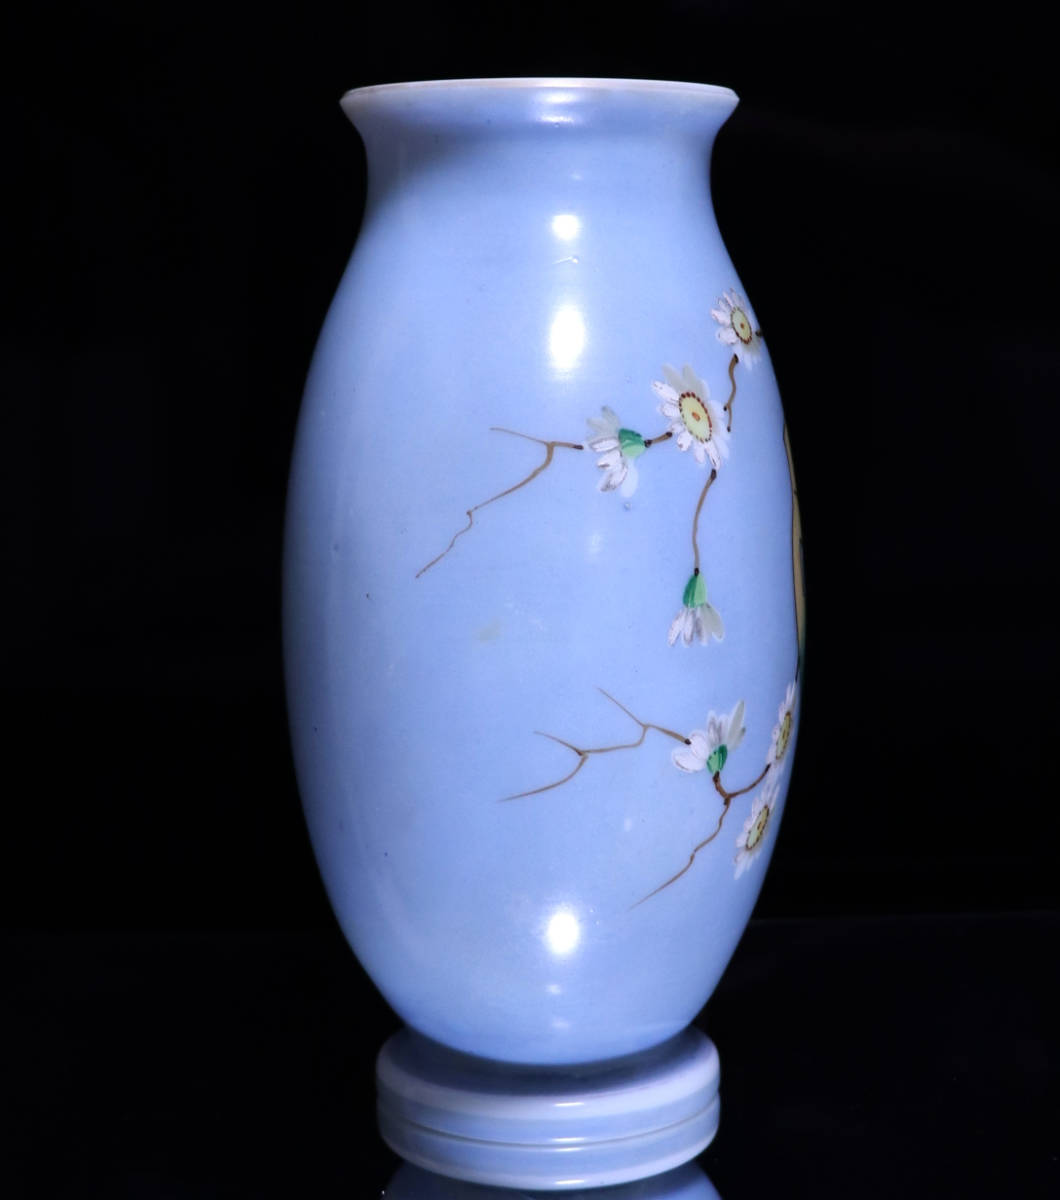 オールド・バカラ (BACCARAT) 日本趣味 レアカラー オパーリンクリスタル製 大型花瓶 ライトブルー 壺 アンティーク ジャポニスム セーブル_画像2